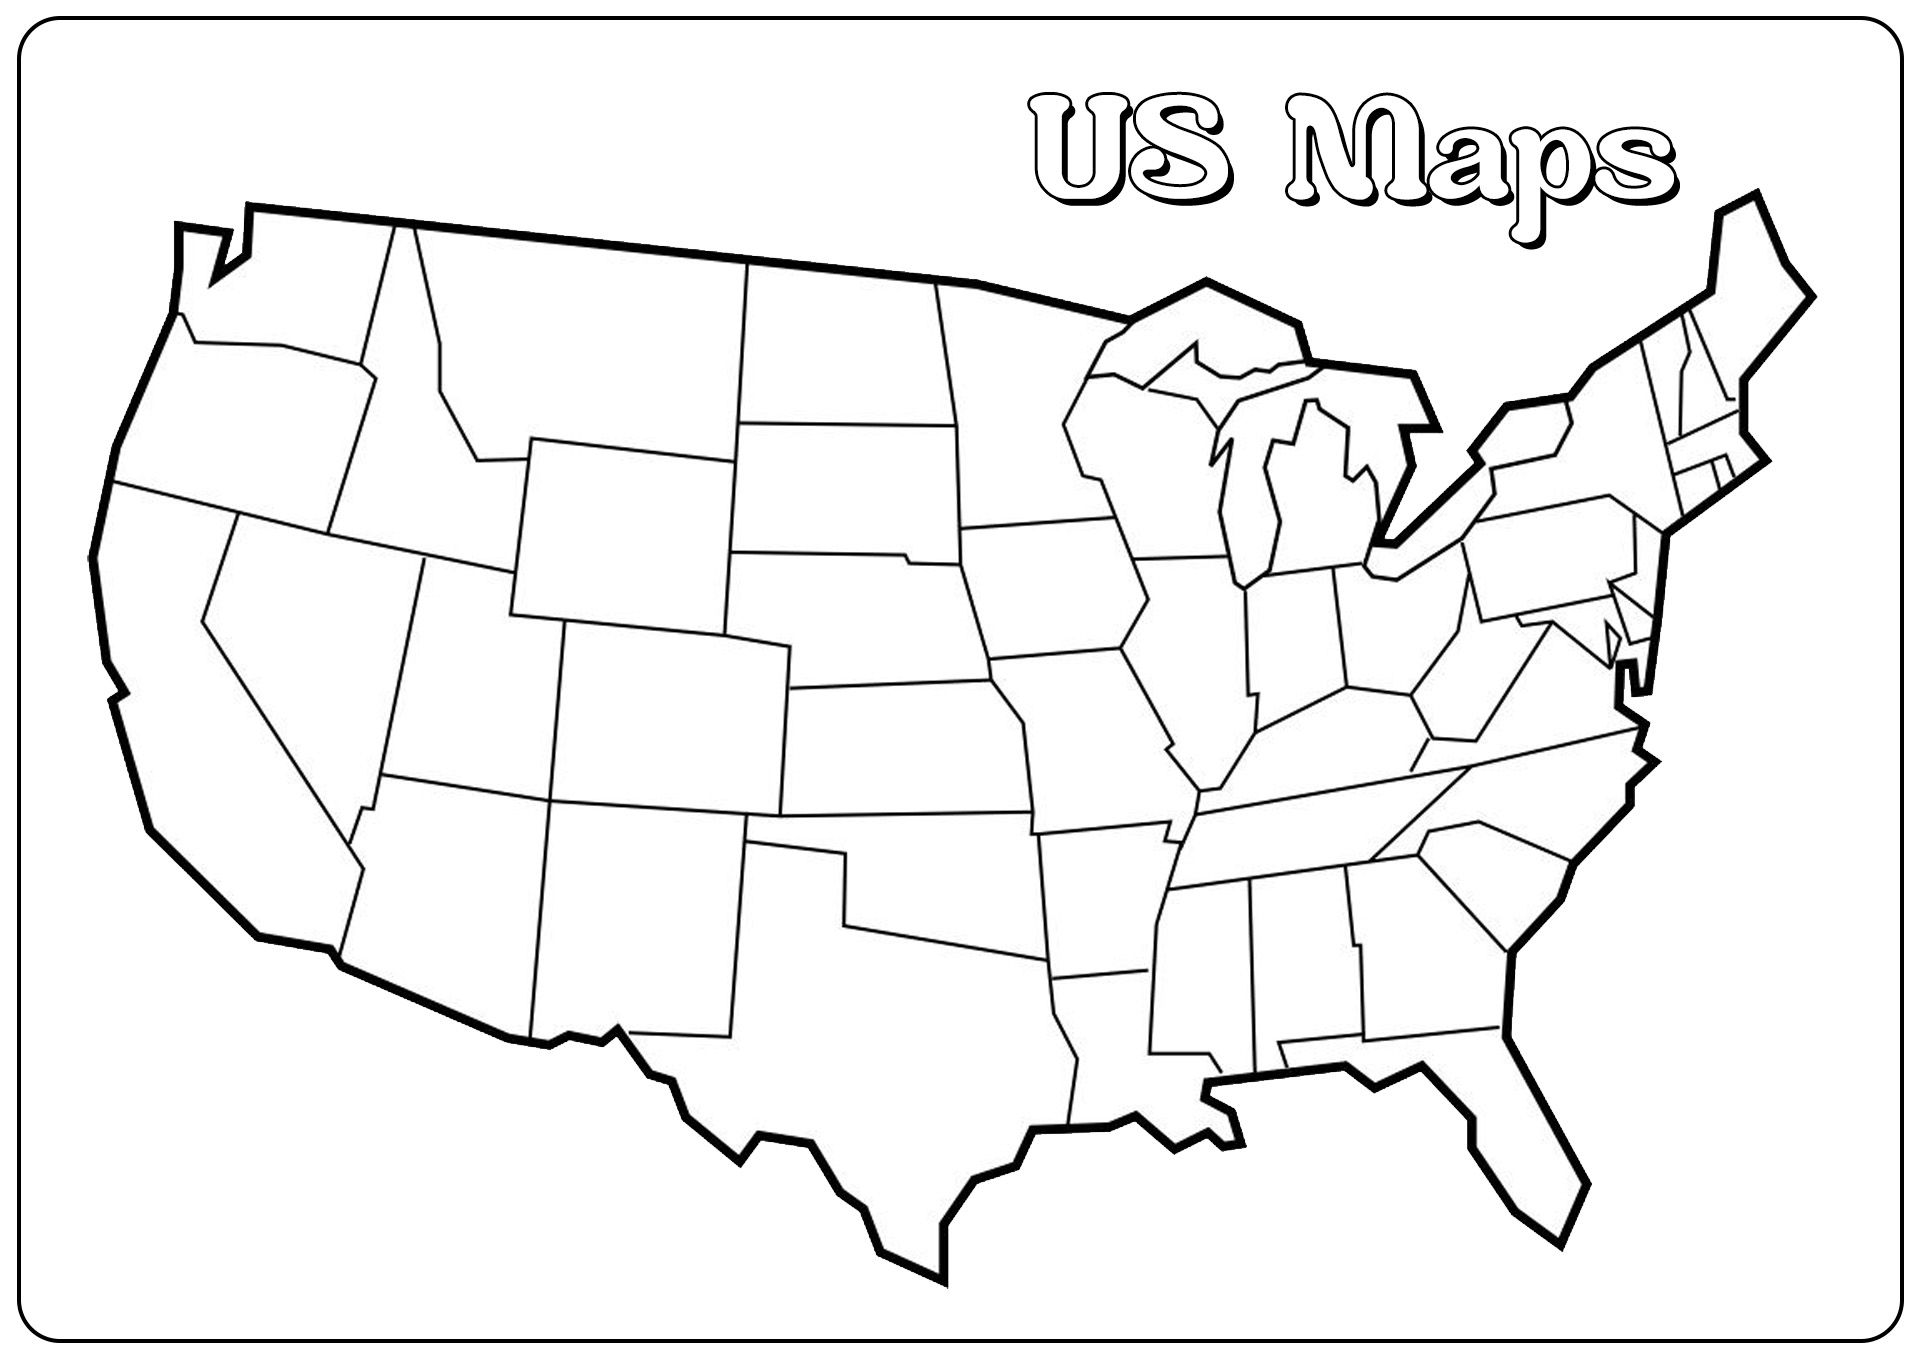 Контурные карты штатов. Карта Штатов США пустая. 50 Штатов США контурнаяксрта. Карта Штатов США без названий. Карта США со Штатами черно белая.